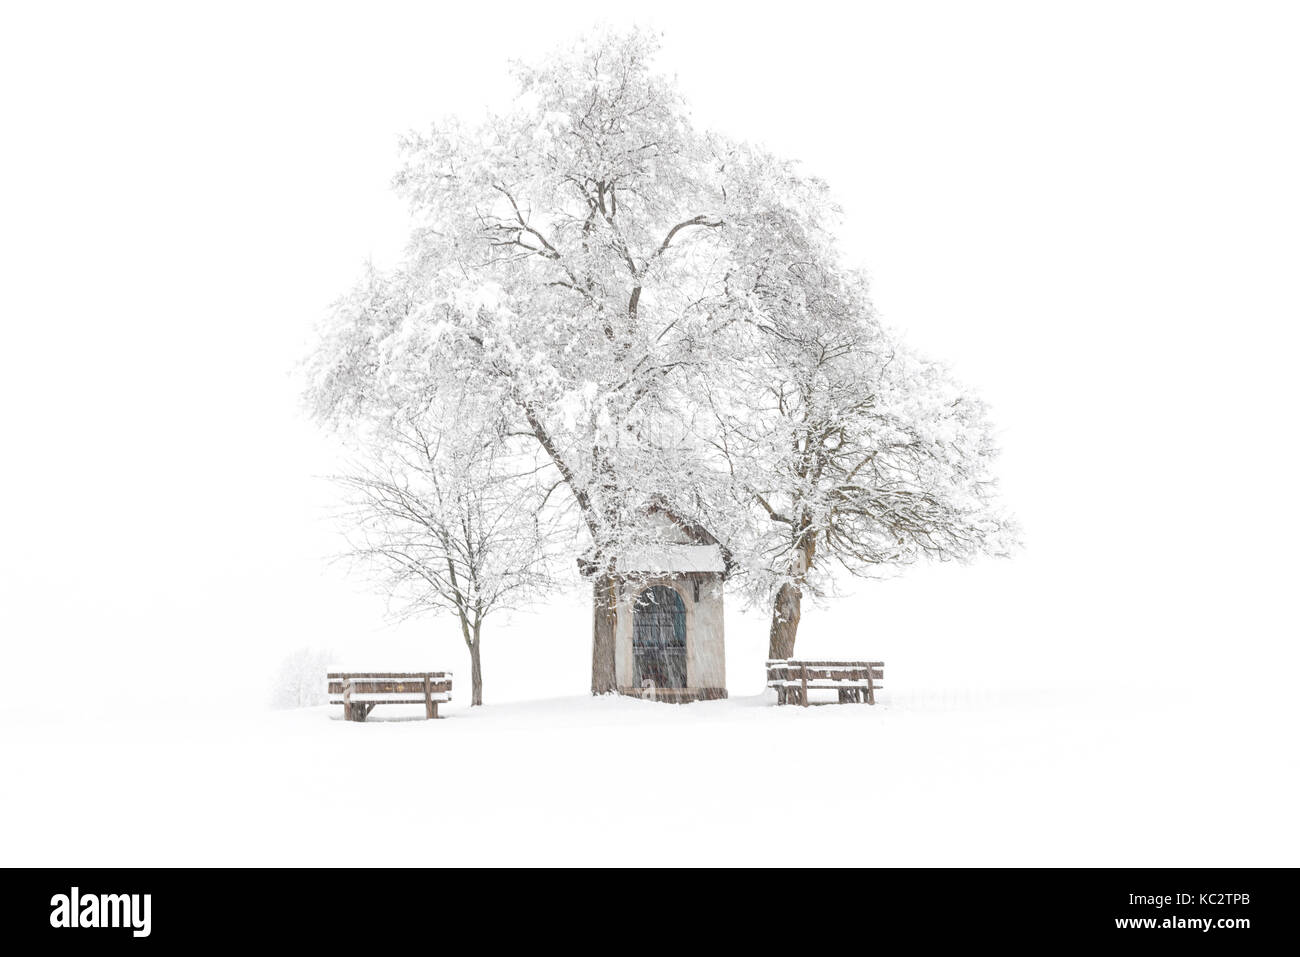 L'Europe, Italie, Trentin-Haut-Adige. La madone brusada chapelle en prairies de vallée de non dans une journée d'hiver. Banque D'Images